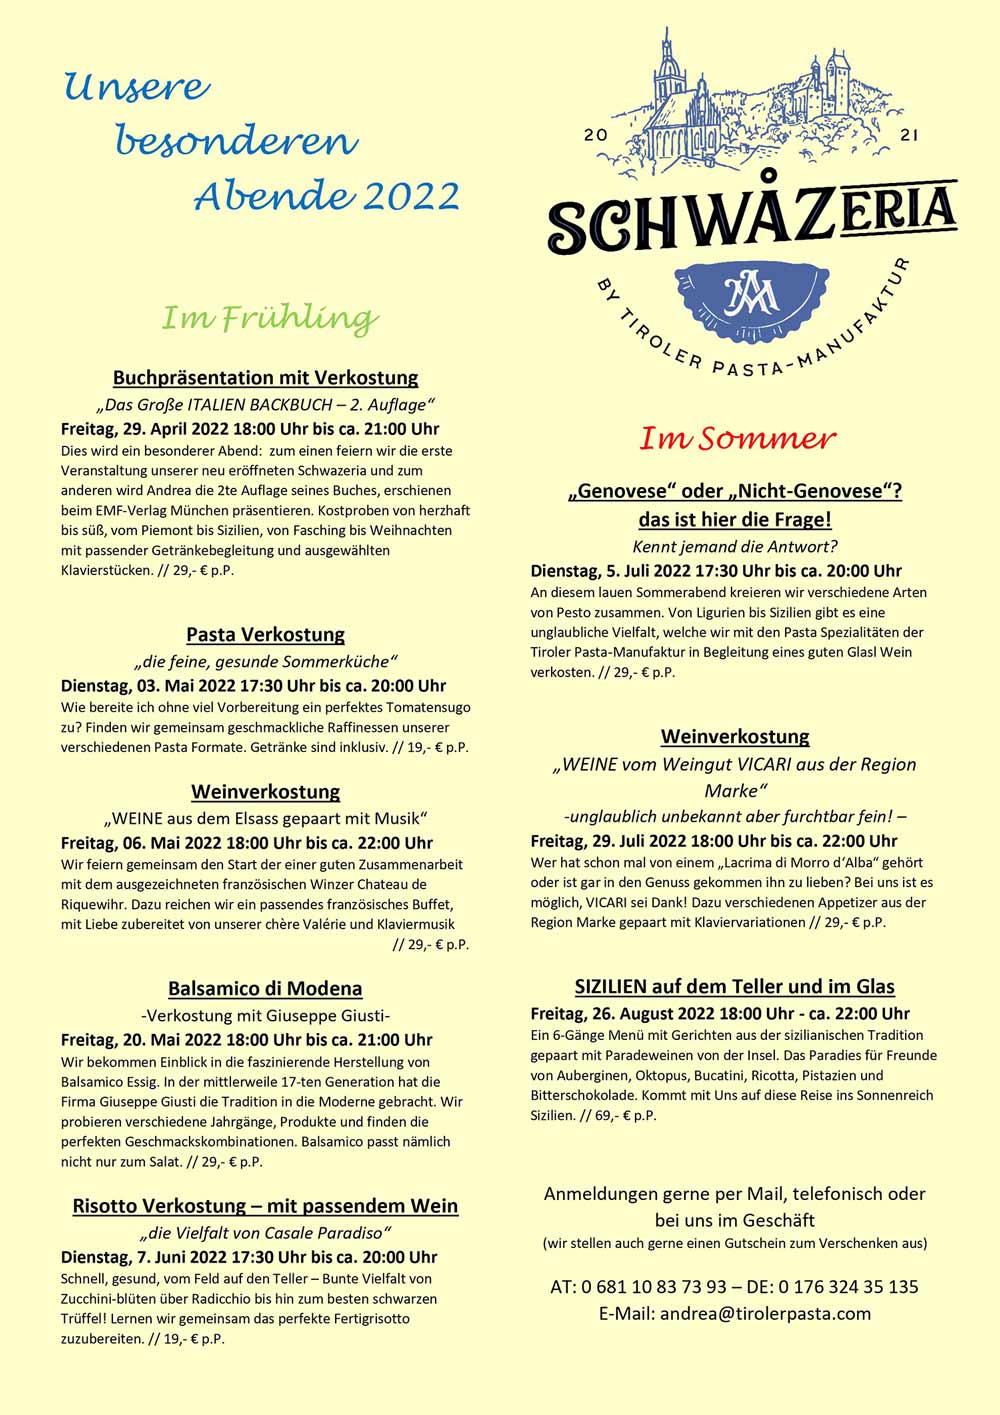 Veranstaltungen_Schwazeria-frhuehjahr_sommer2022